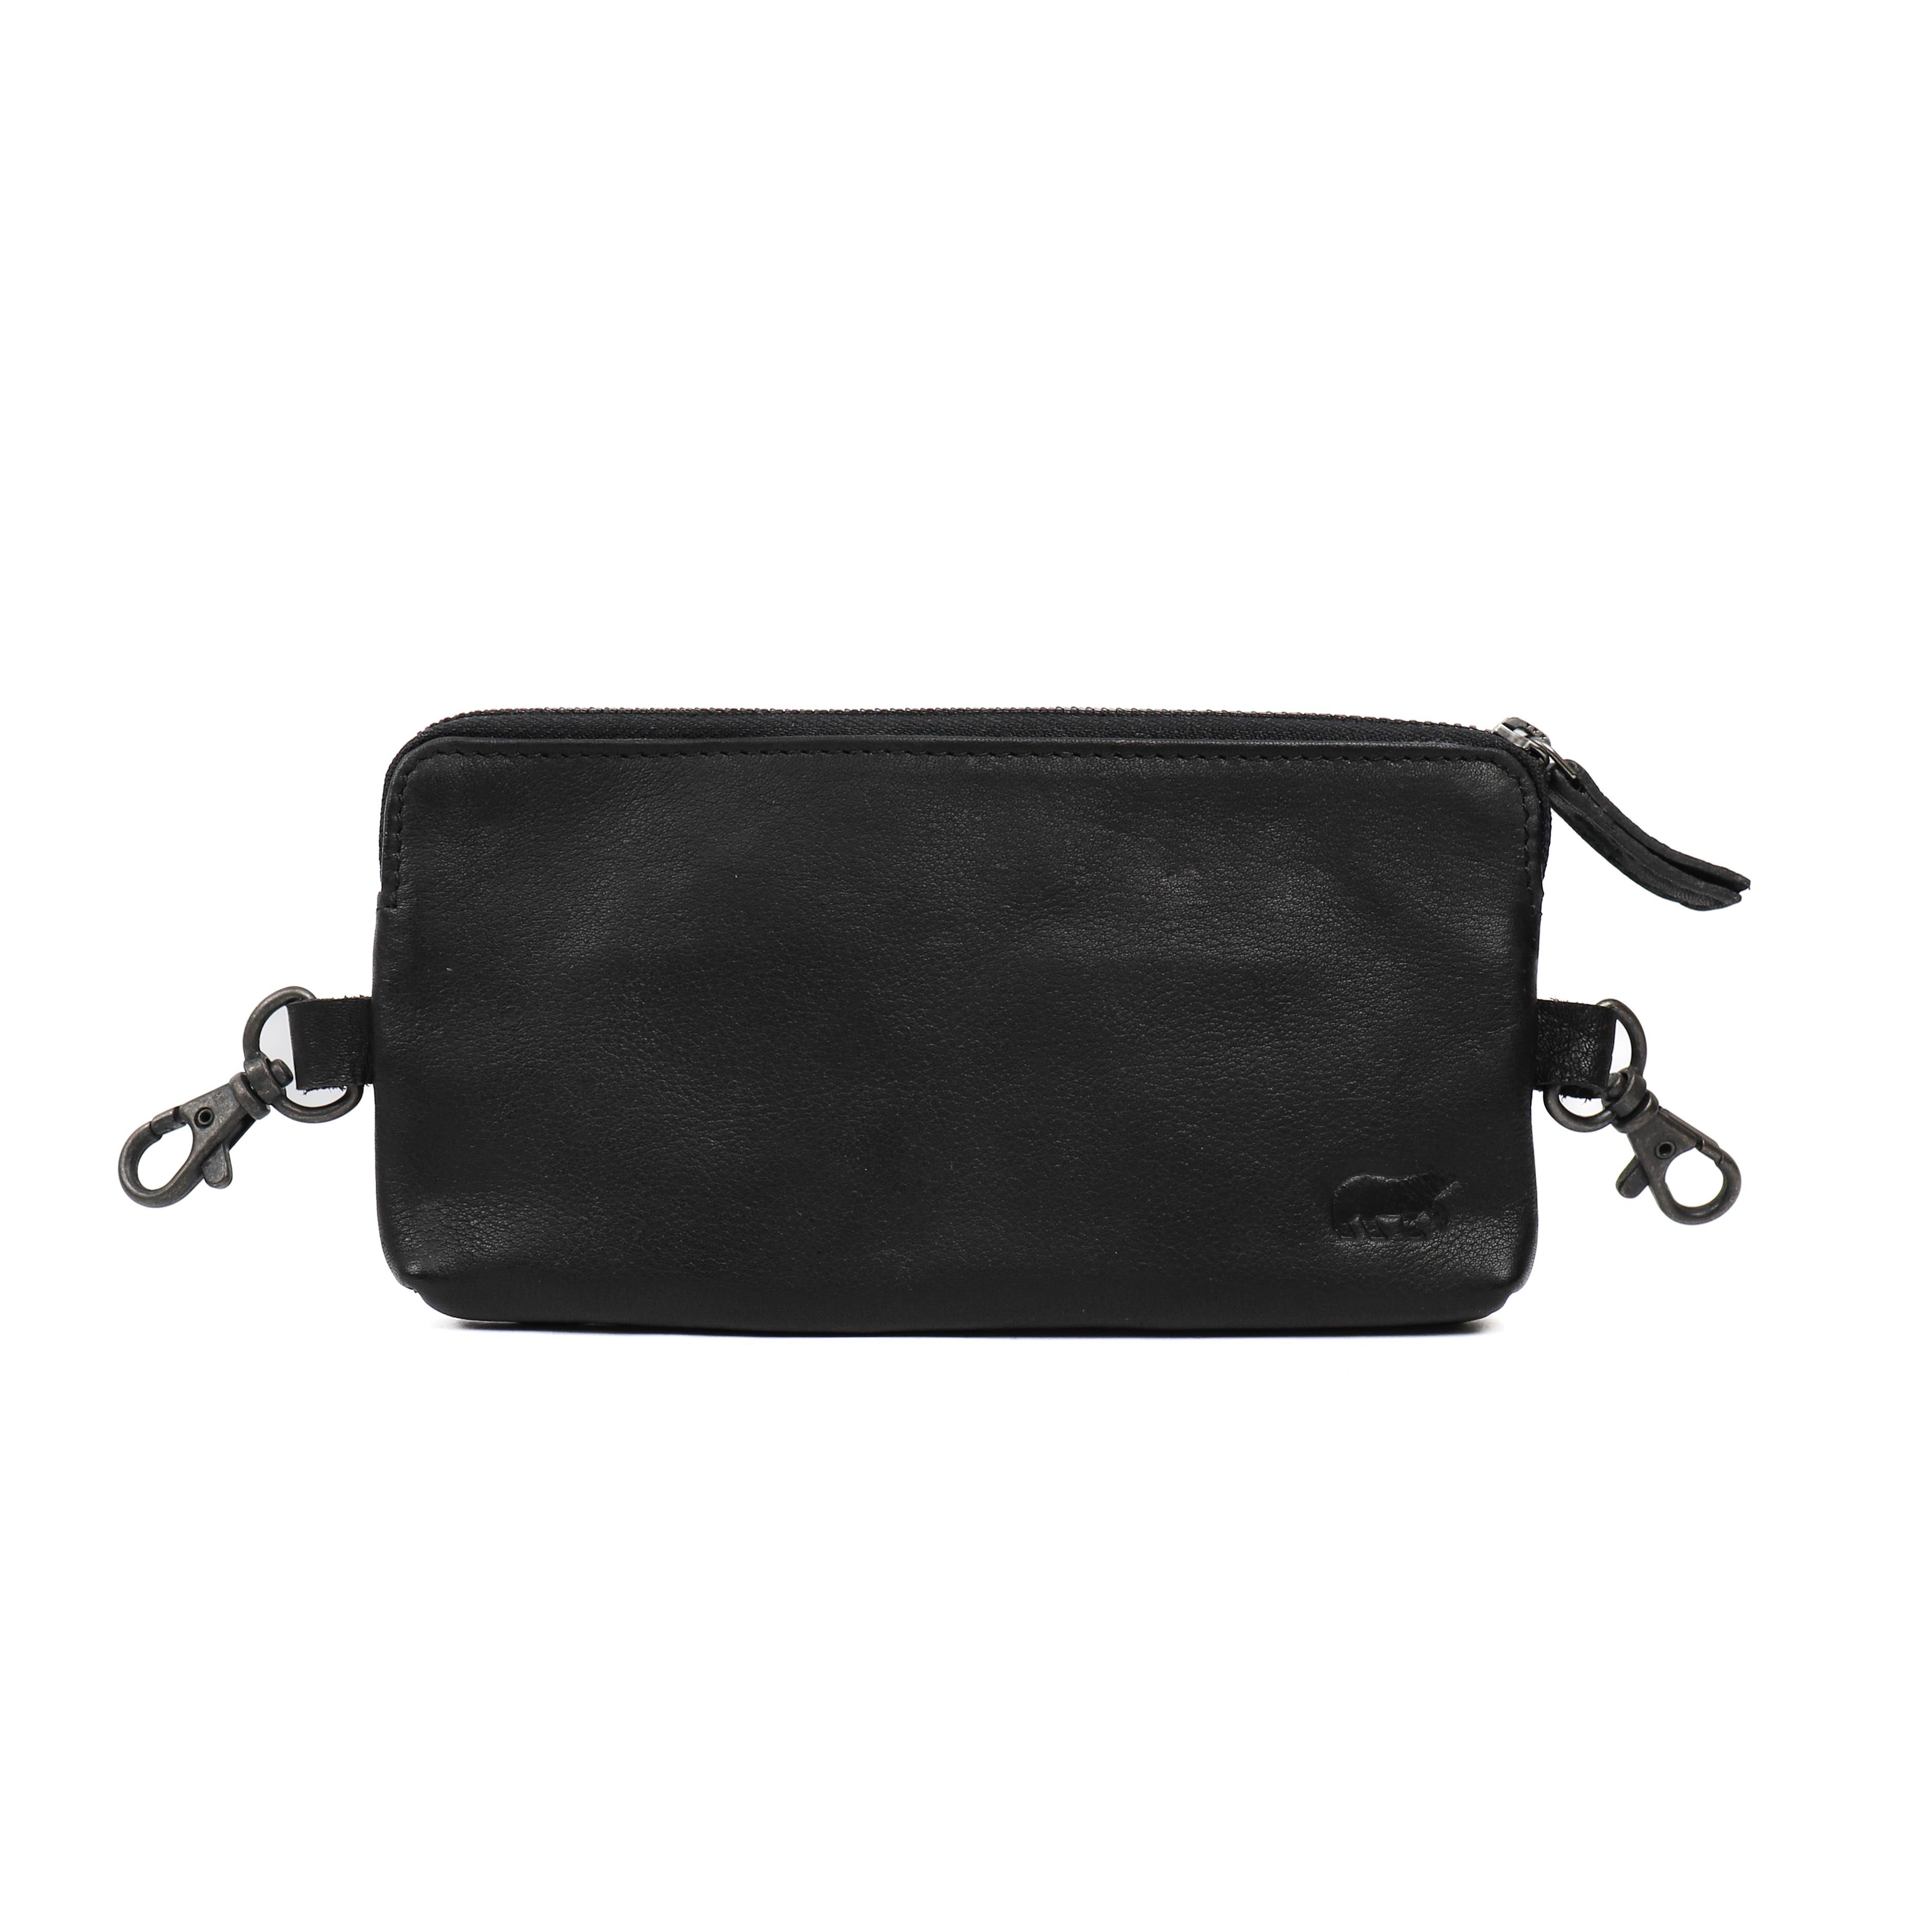 Belt bag/pouch 'Pierre' black